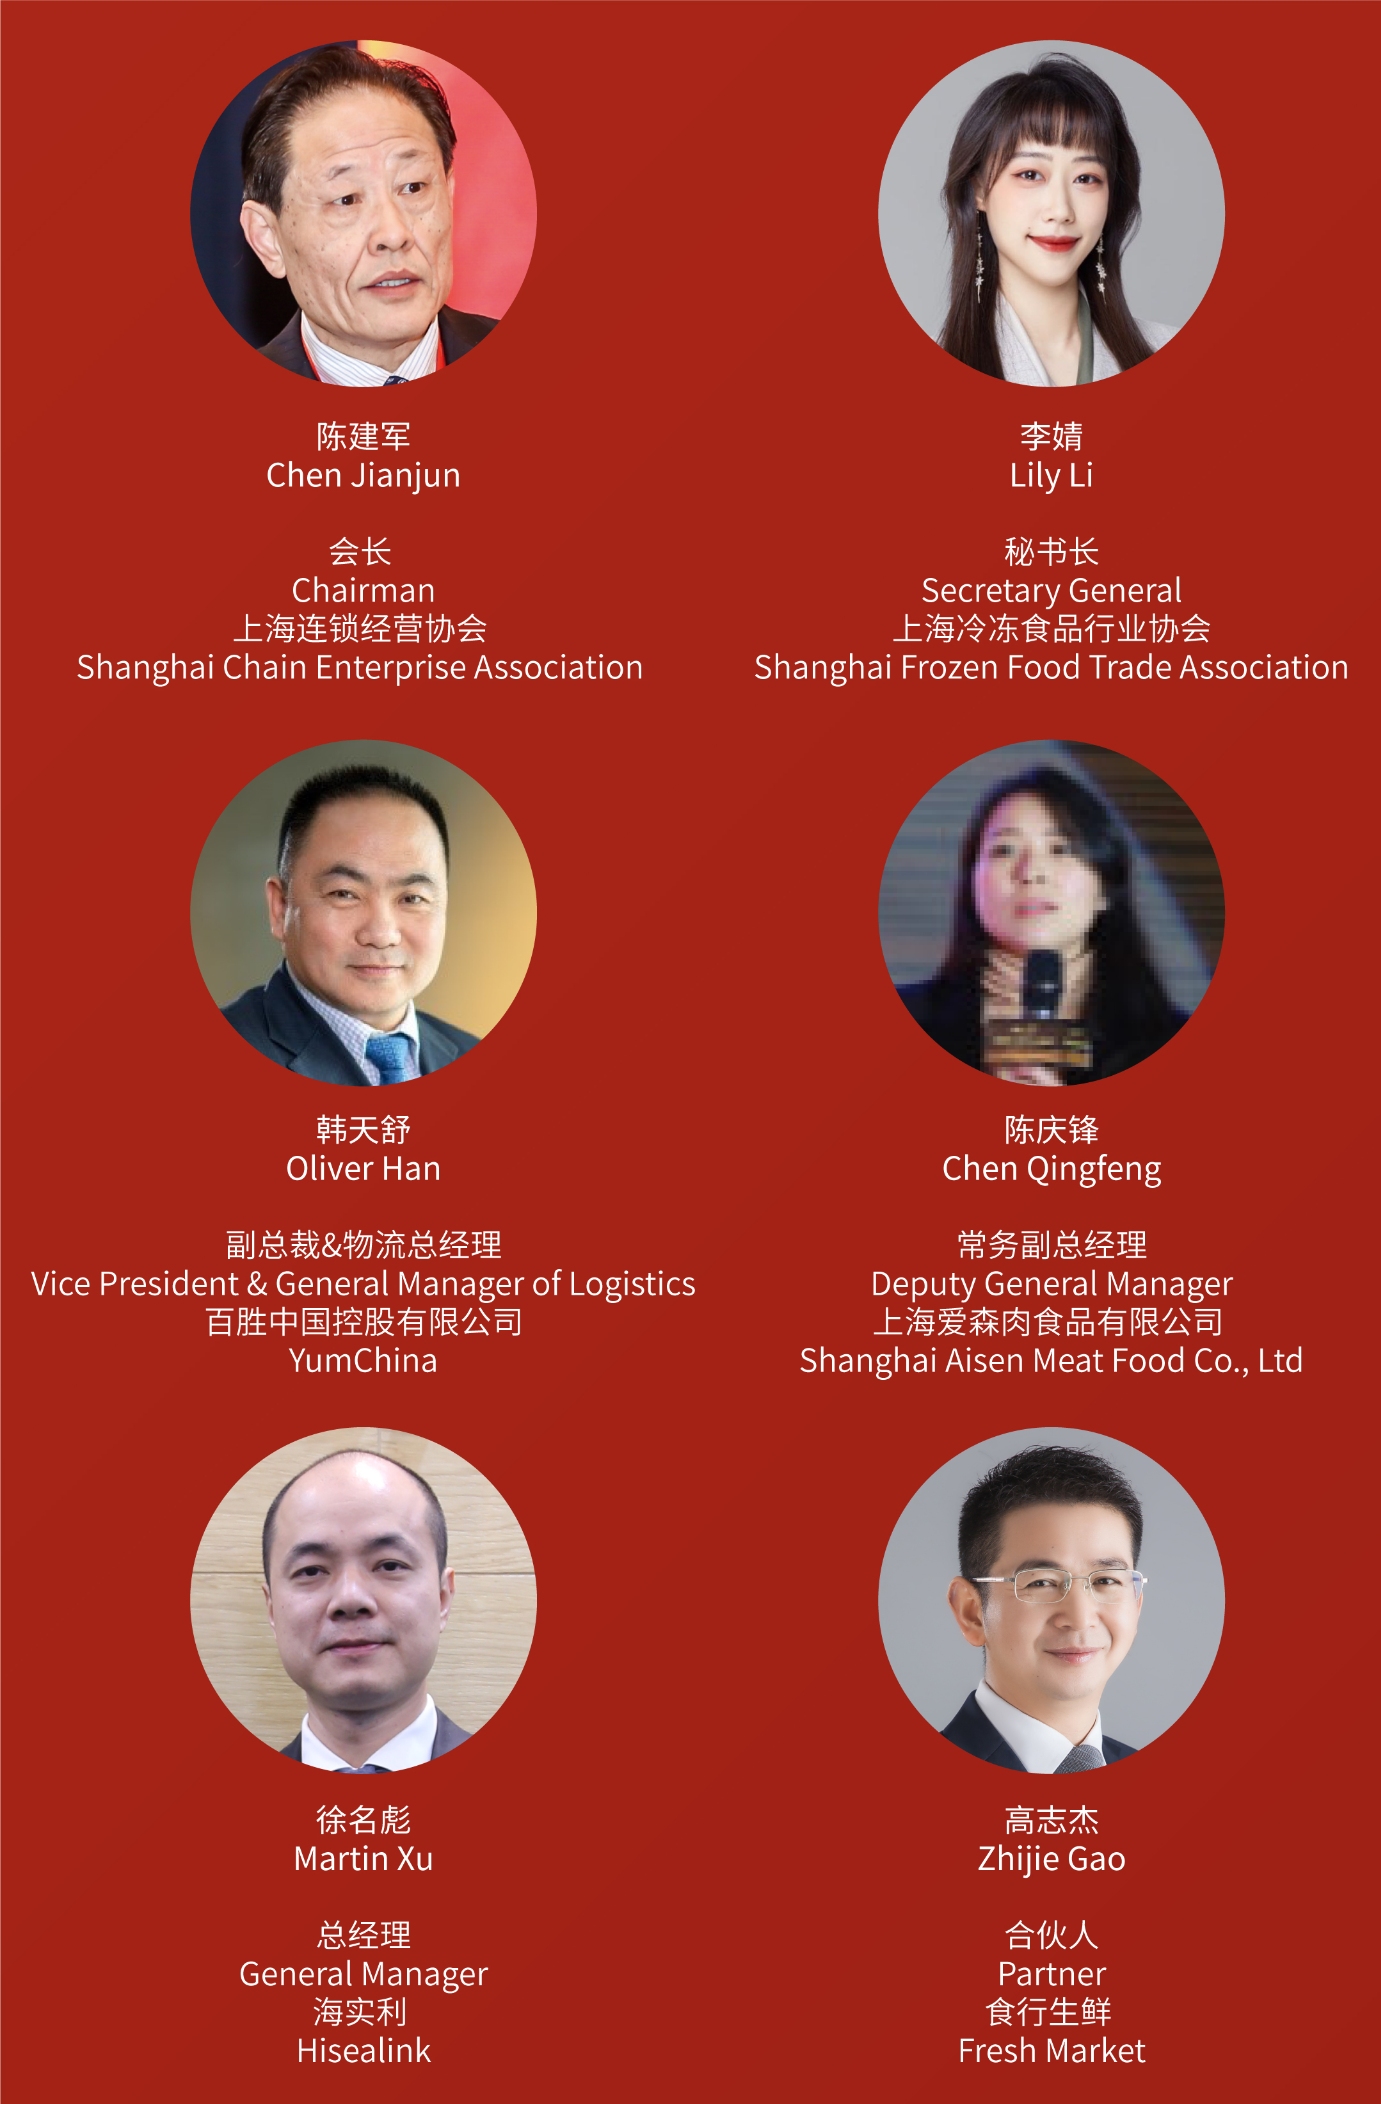 2021（第五届）中国零售供应链与物流峰会